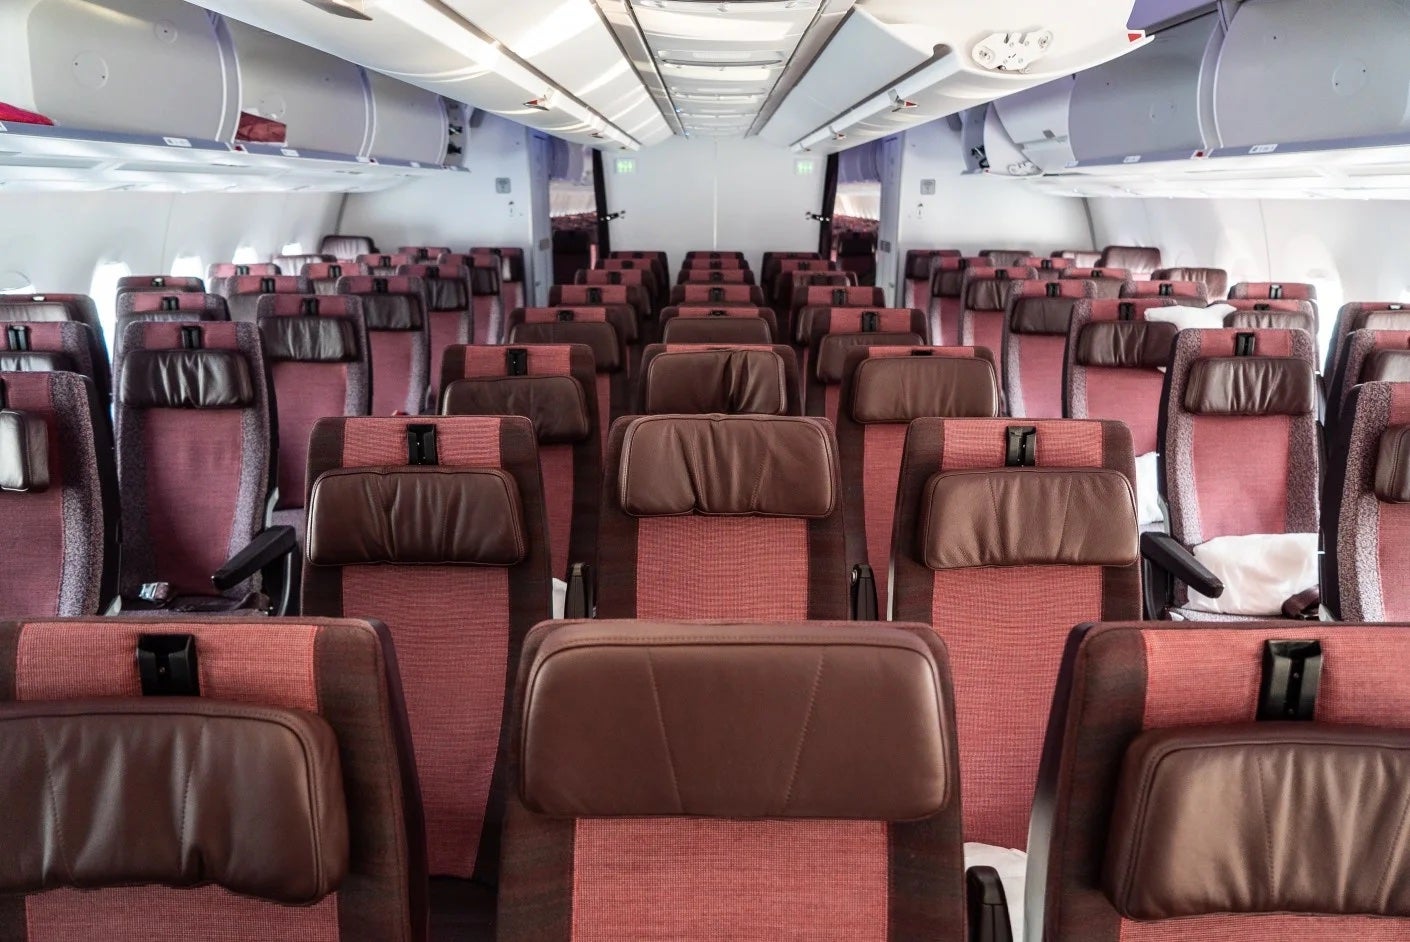 Virgin Atlantic seats